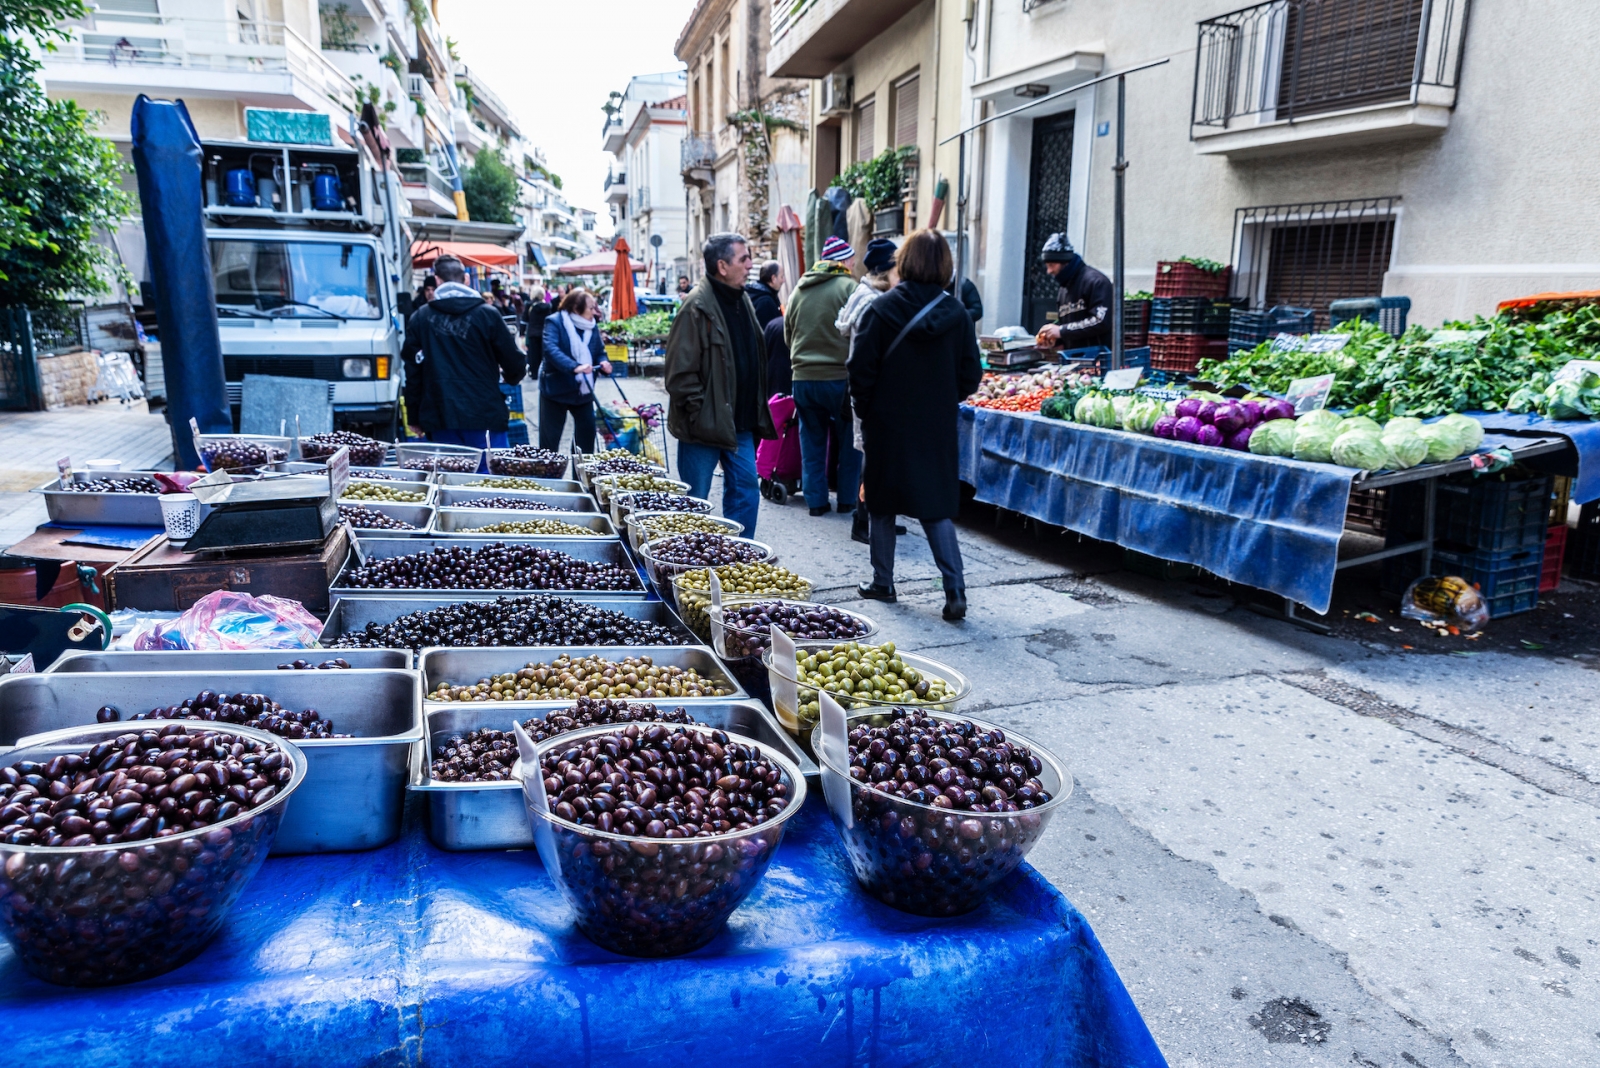 Фермерский рынок на улице в Афинах, Греция